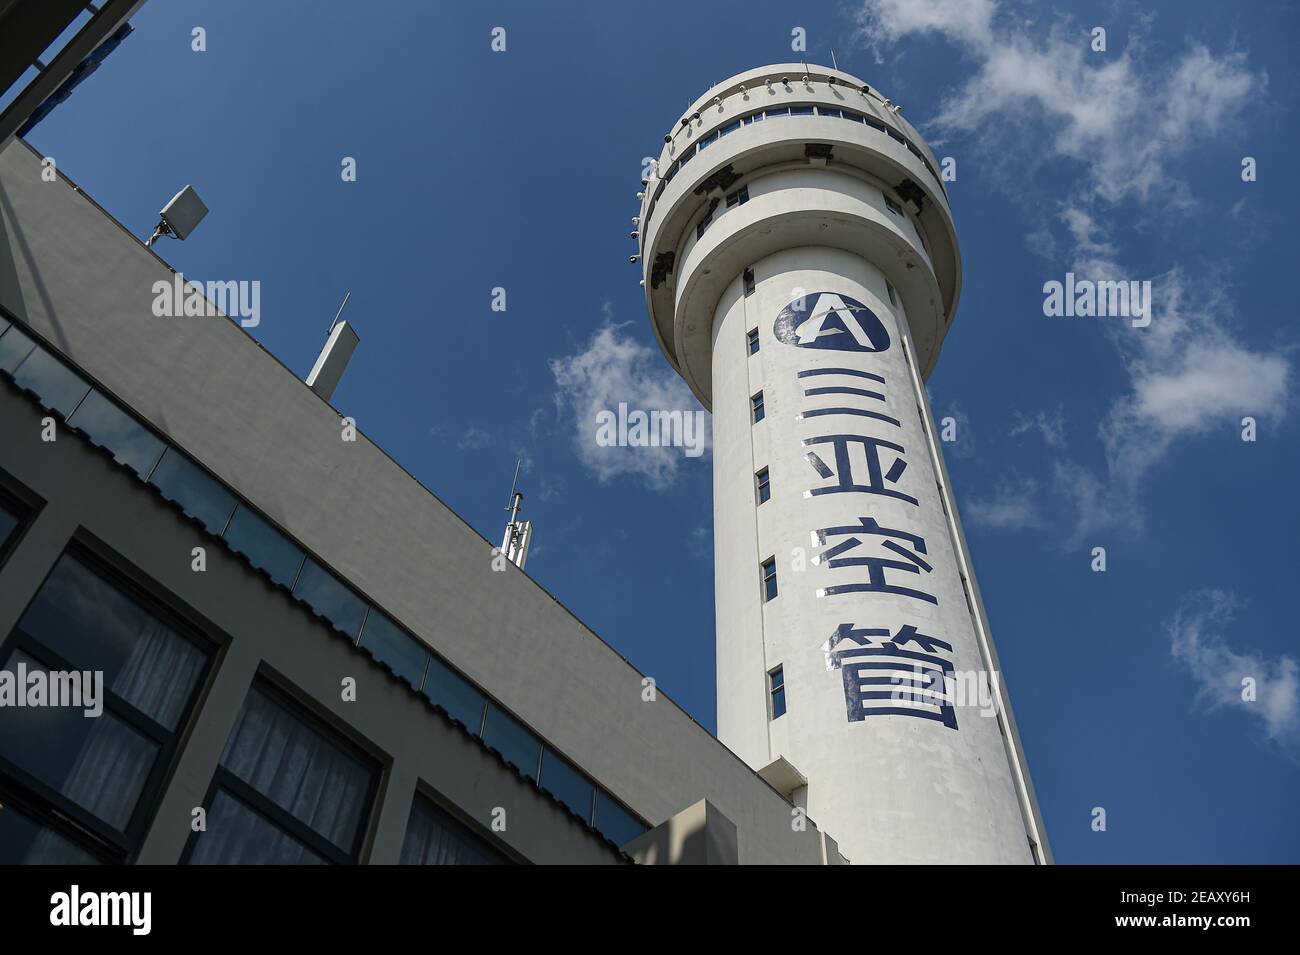 (210211) -- SANYA, 11 de febrero de 2021 (Xinhua) -- la Torre de Control de tráfico aéreo de Sanya está representada en Sanya, al sur de la provincia de Hainan, 28 de enero de 2021. Hong Yuan, de 29 años, es un controlador de tráfico aéreo en Sanya Air Traffic Control Tower. Como controlador de tráfico aéreo, Hong es responsable de navegar por el tráfico aéreo, guiar a los pilotos durante el despegue y el aterrizaje, y supervisar los aviones a medida que viajan por los cielos. Este trabajo requiere una alta atención. En consecuencia, se supone que los funcionarios deben tomar un descanso cada dos horas para recuperarse del intenso trabajo. Durante el año pasado, el tráfico aéreo contro Foto de stock